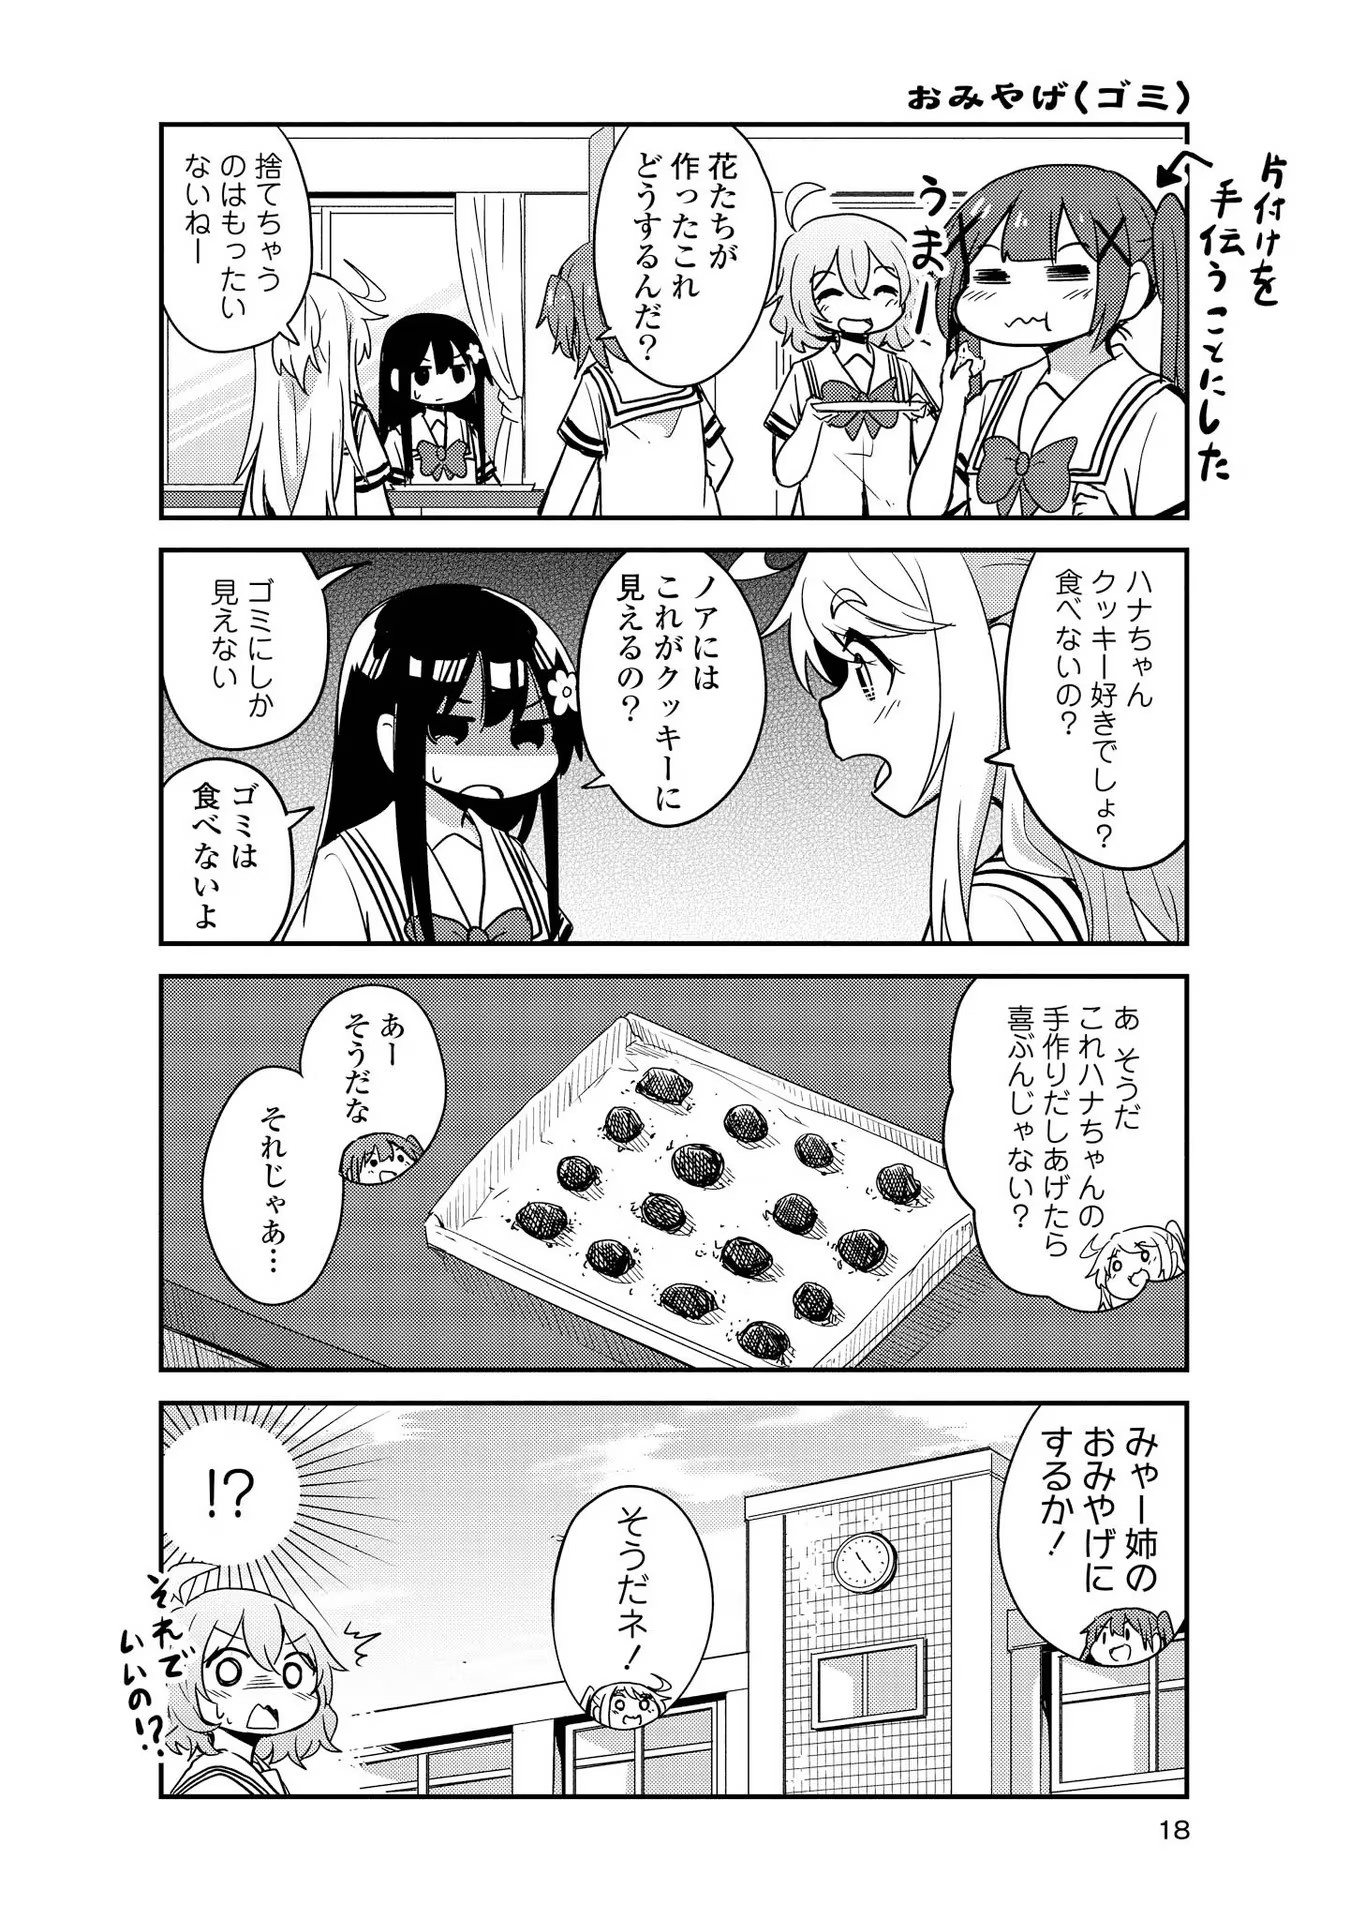 Watashi ni Tenshi ga Maiorita! - Chapter 21 - Page 18